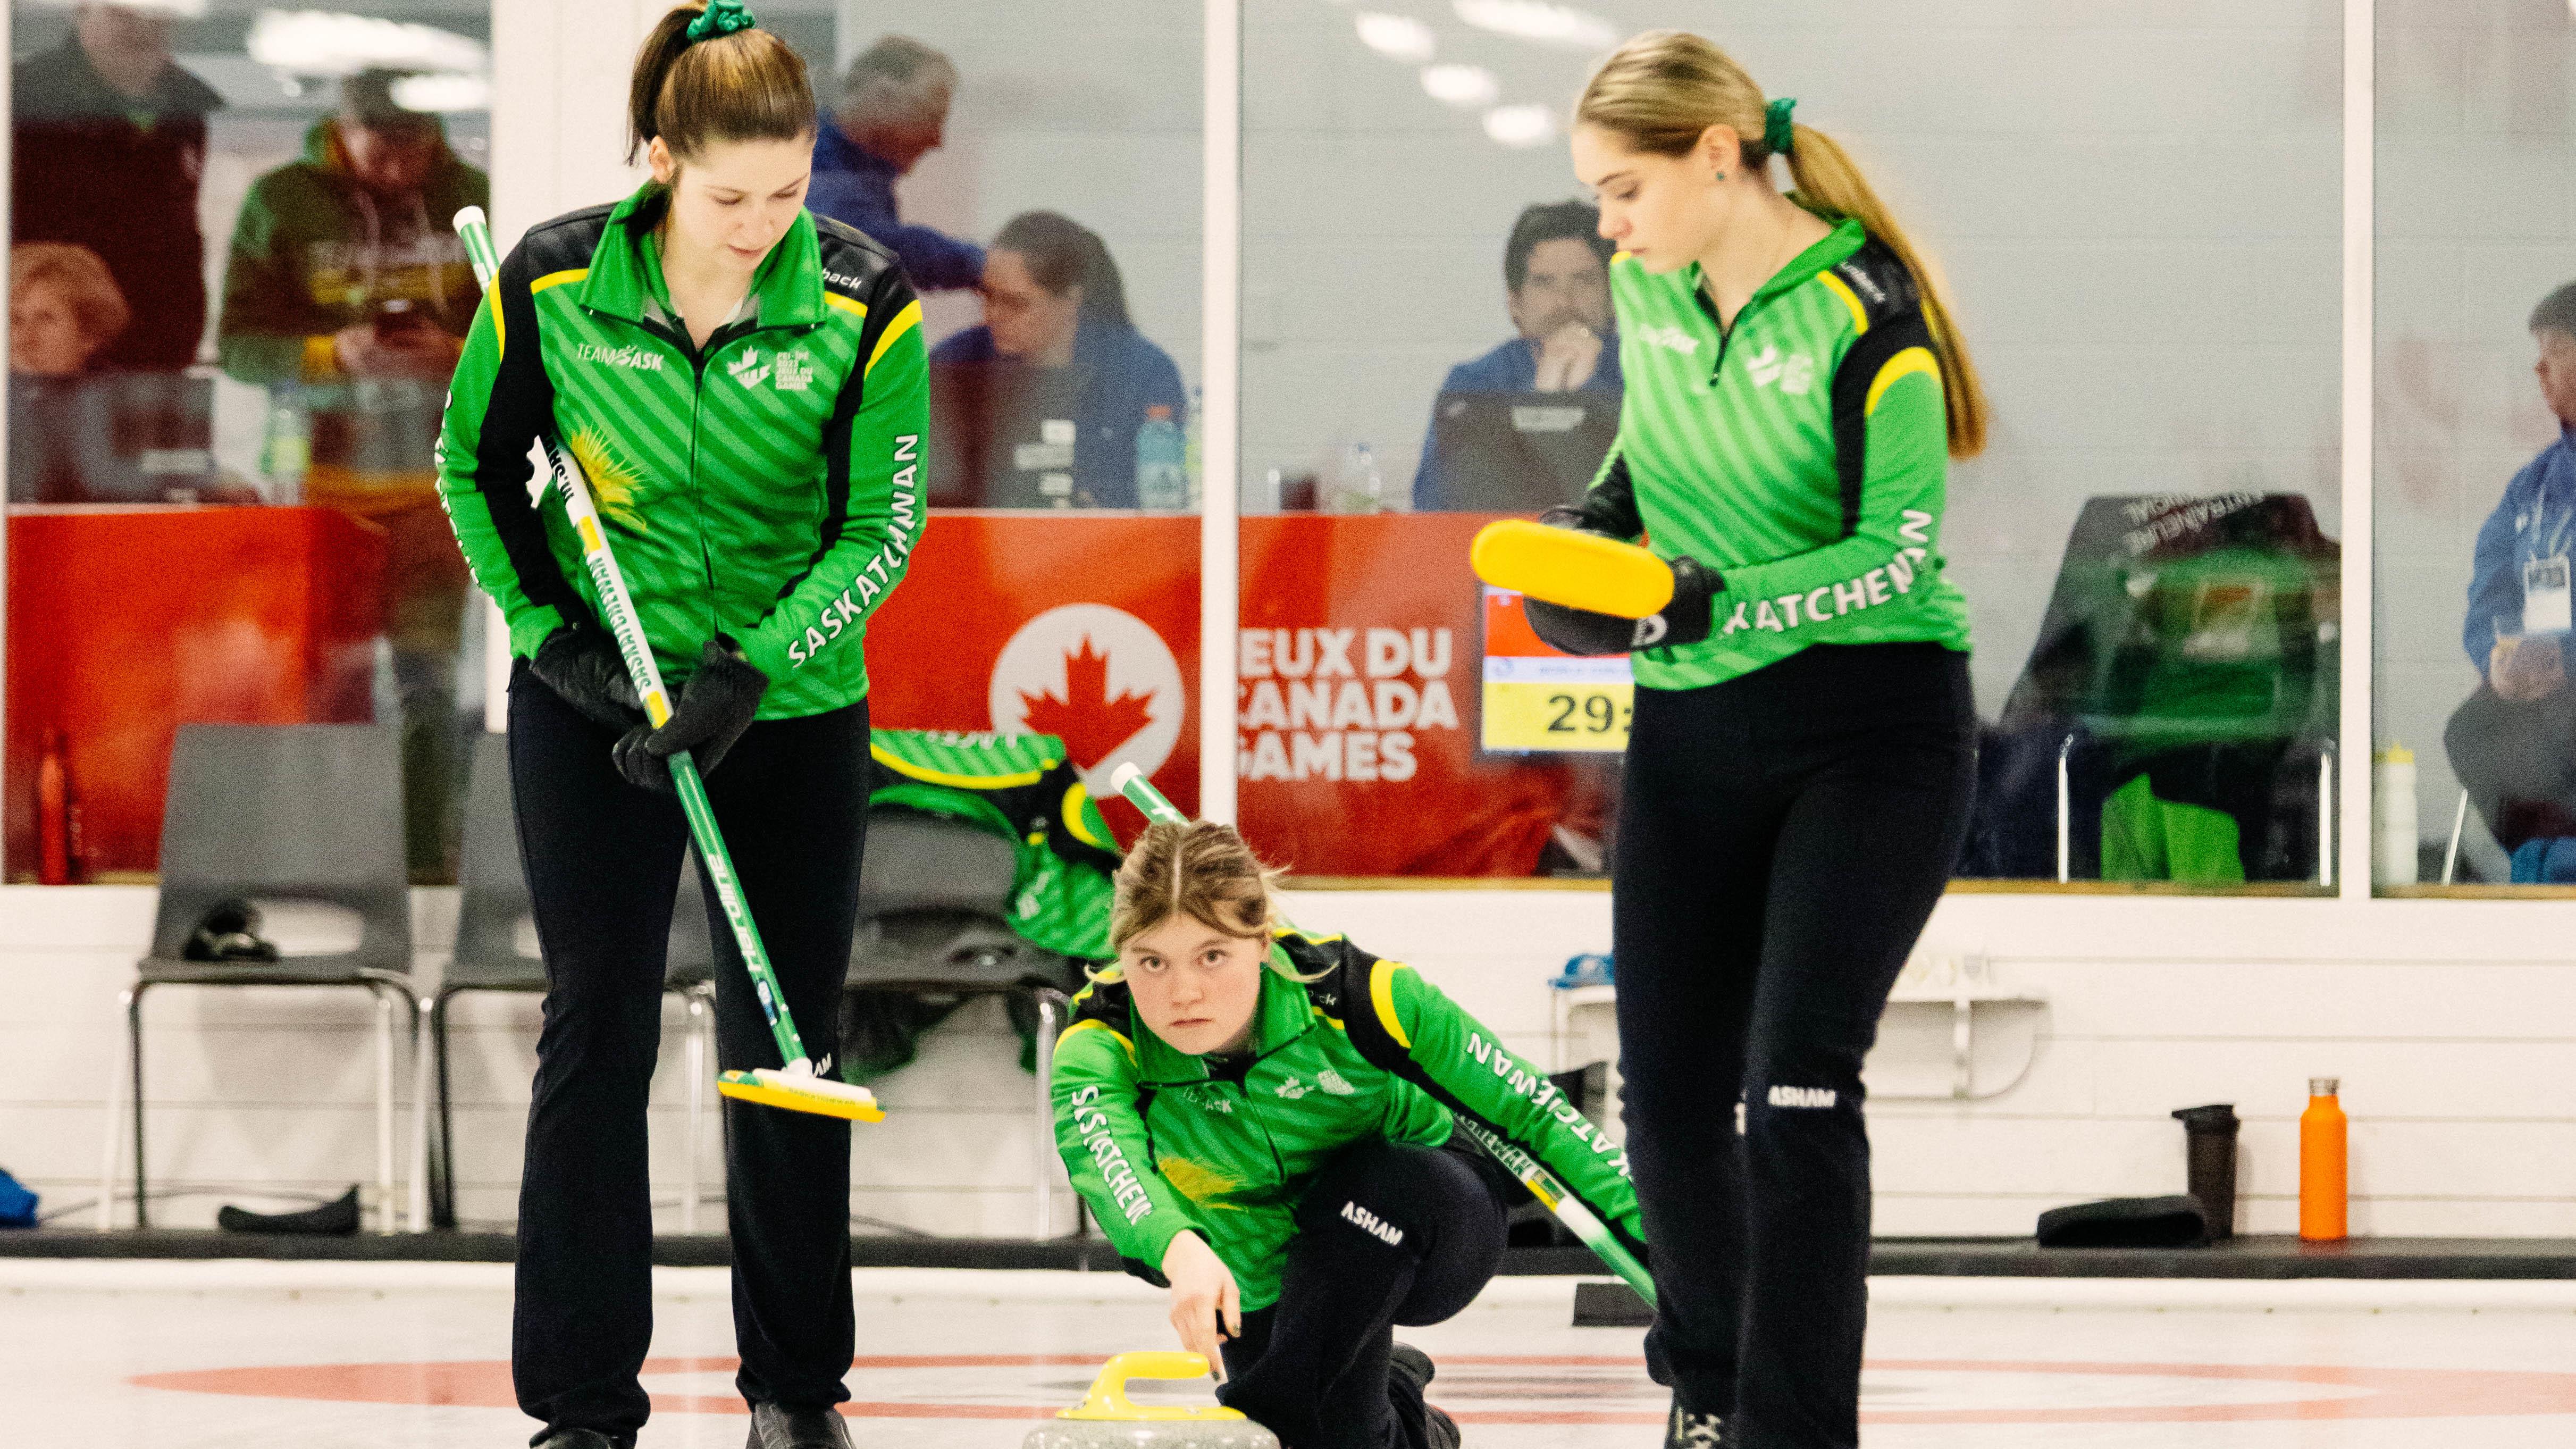 L'équipe provinciale féminine de curling espère une médaille d'or
L'équipe provinciale féminine de curling espère une médaille d'or